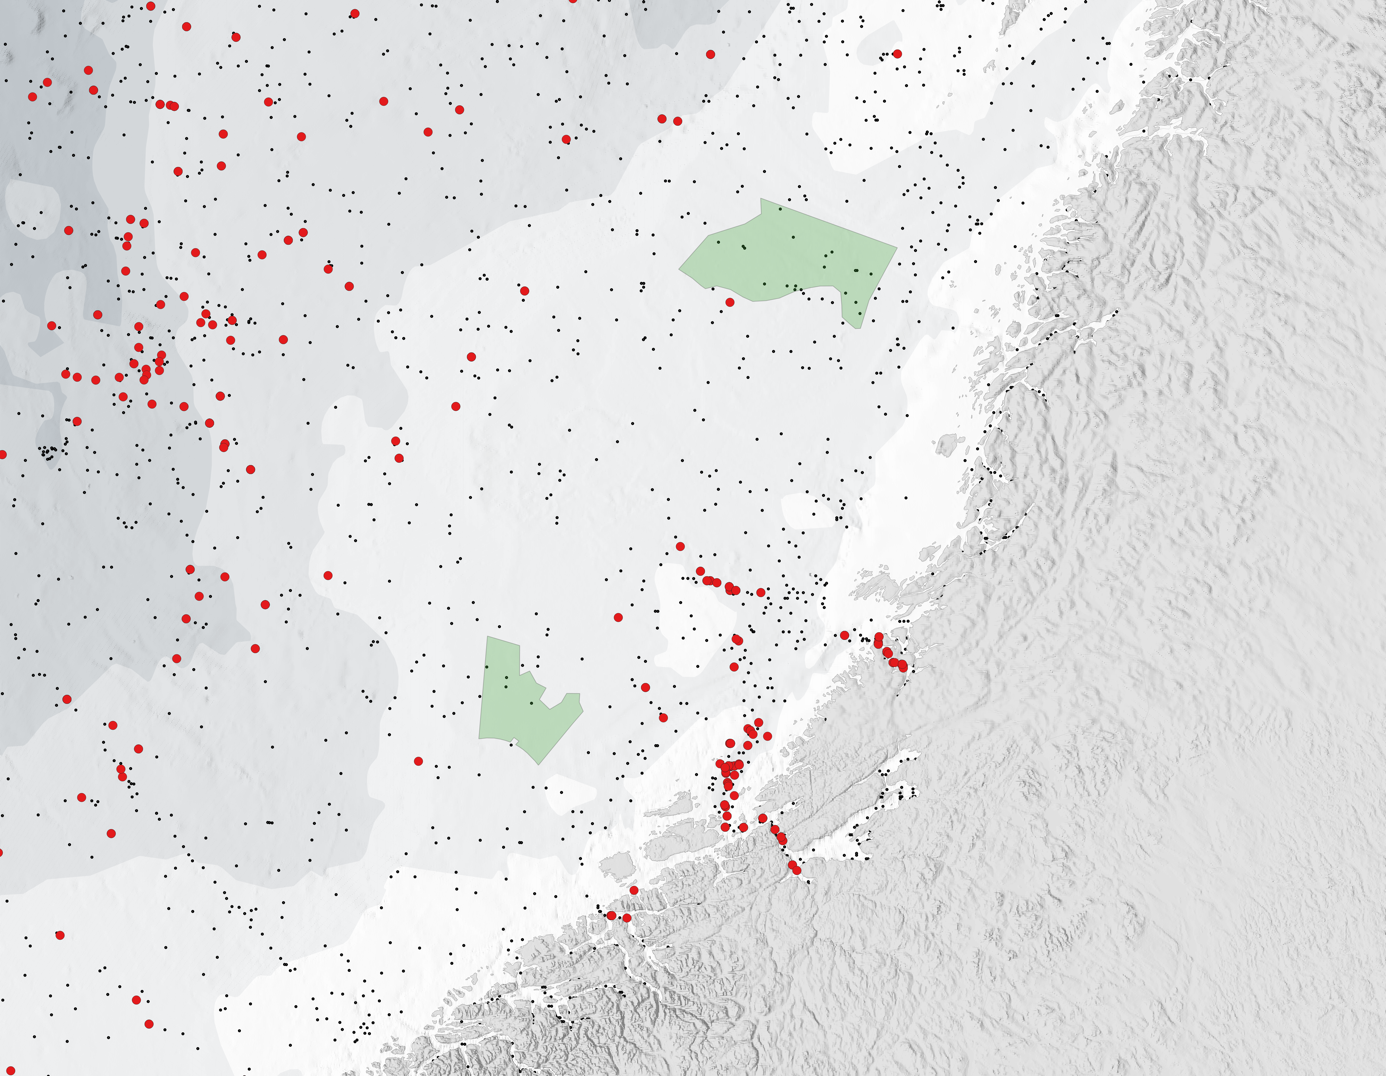 Kart over kysten utenfor Midt-Norge hvor fangster av postsmolt er markert.